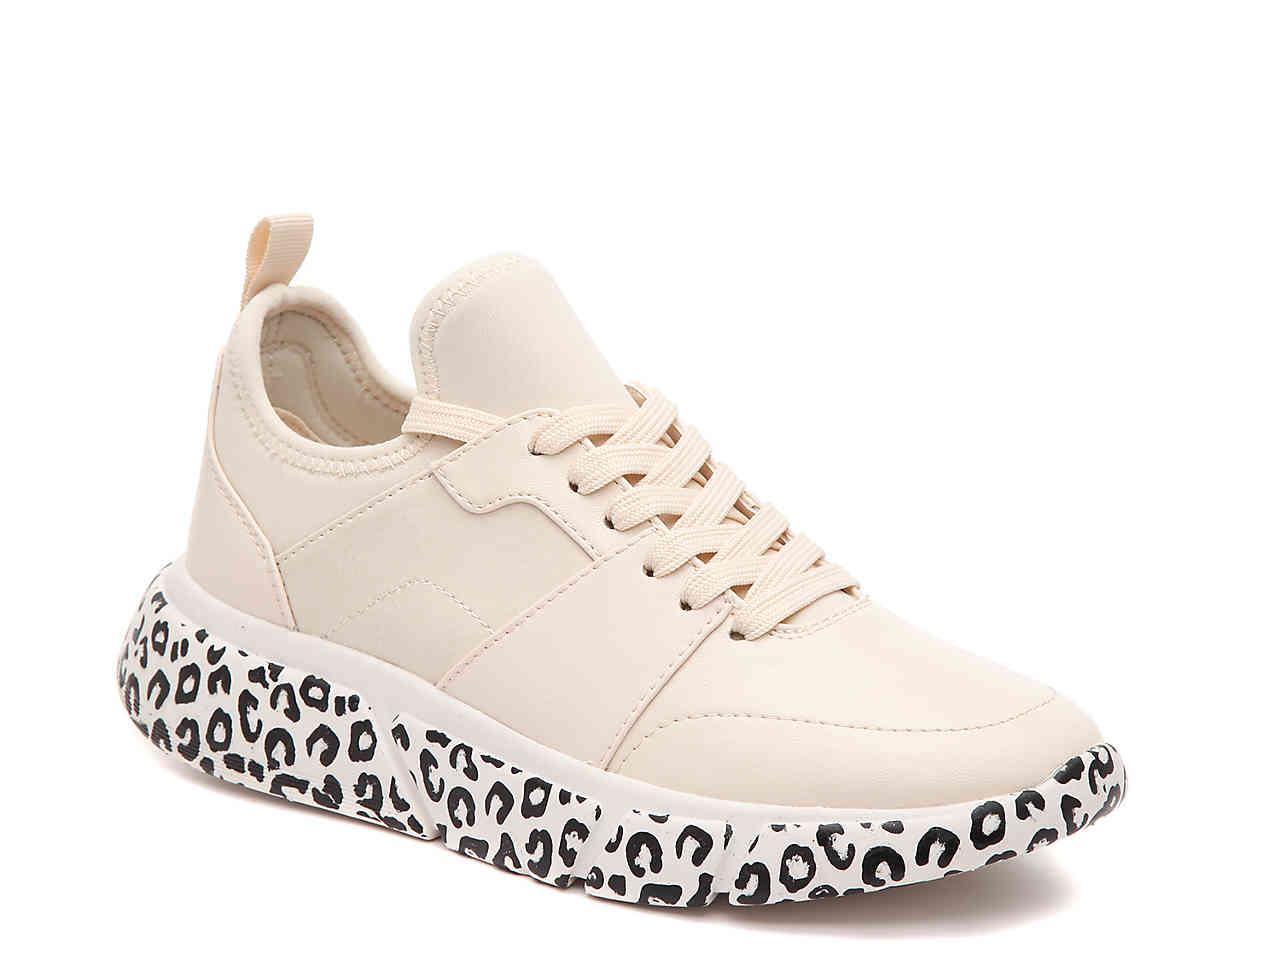 aldo leopard sneakers